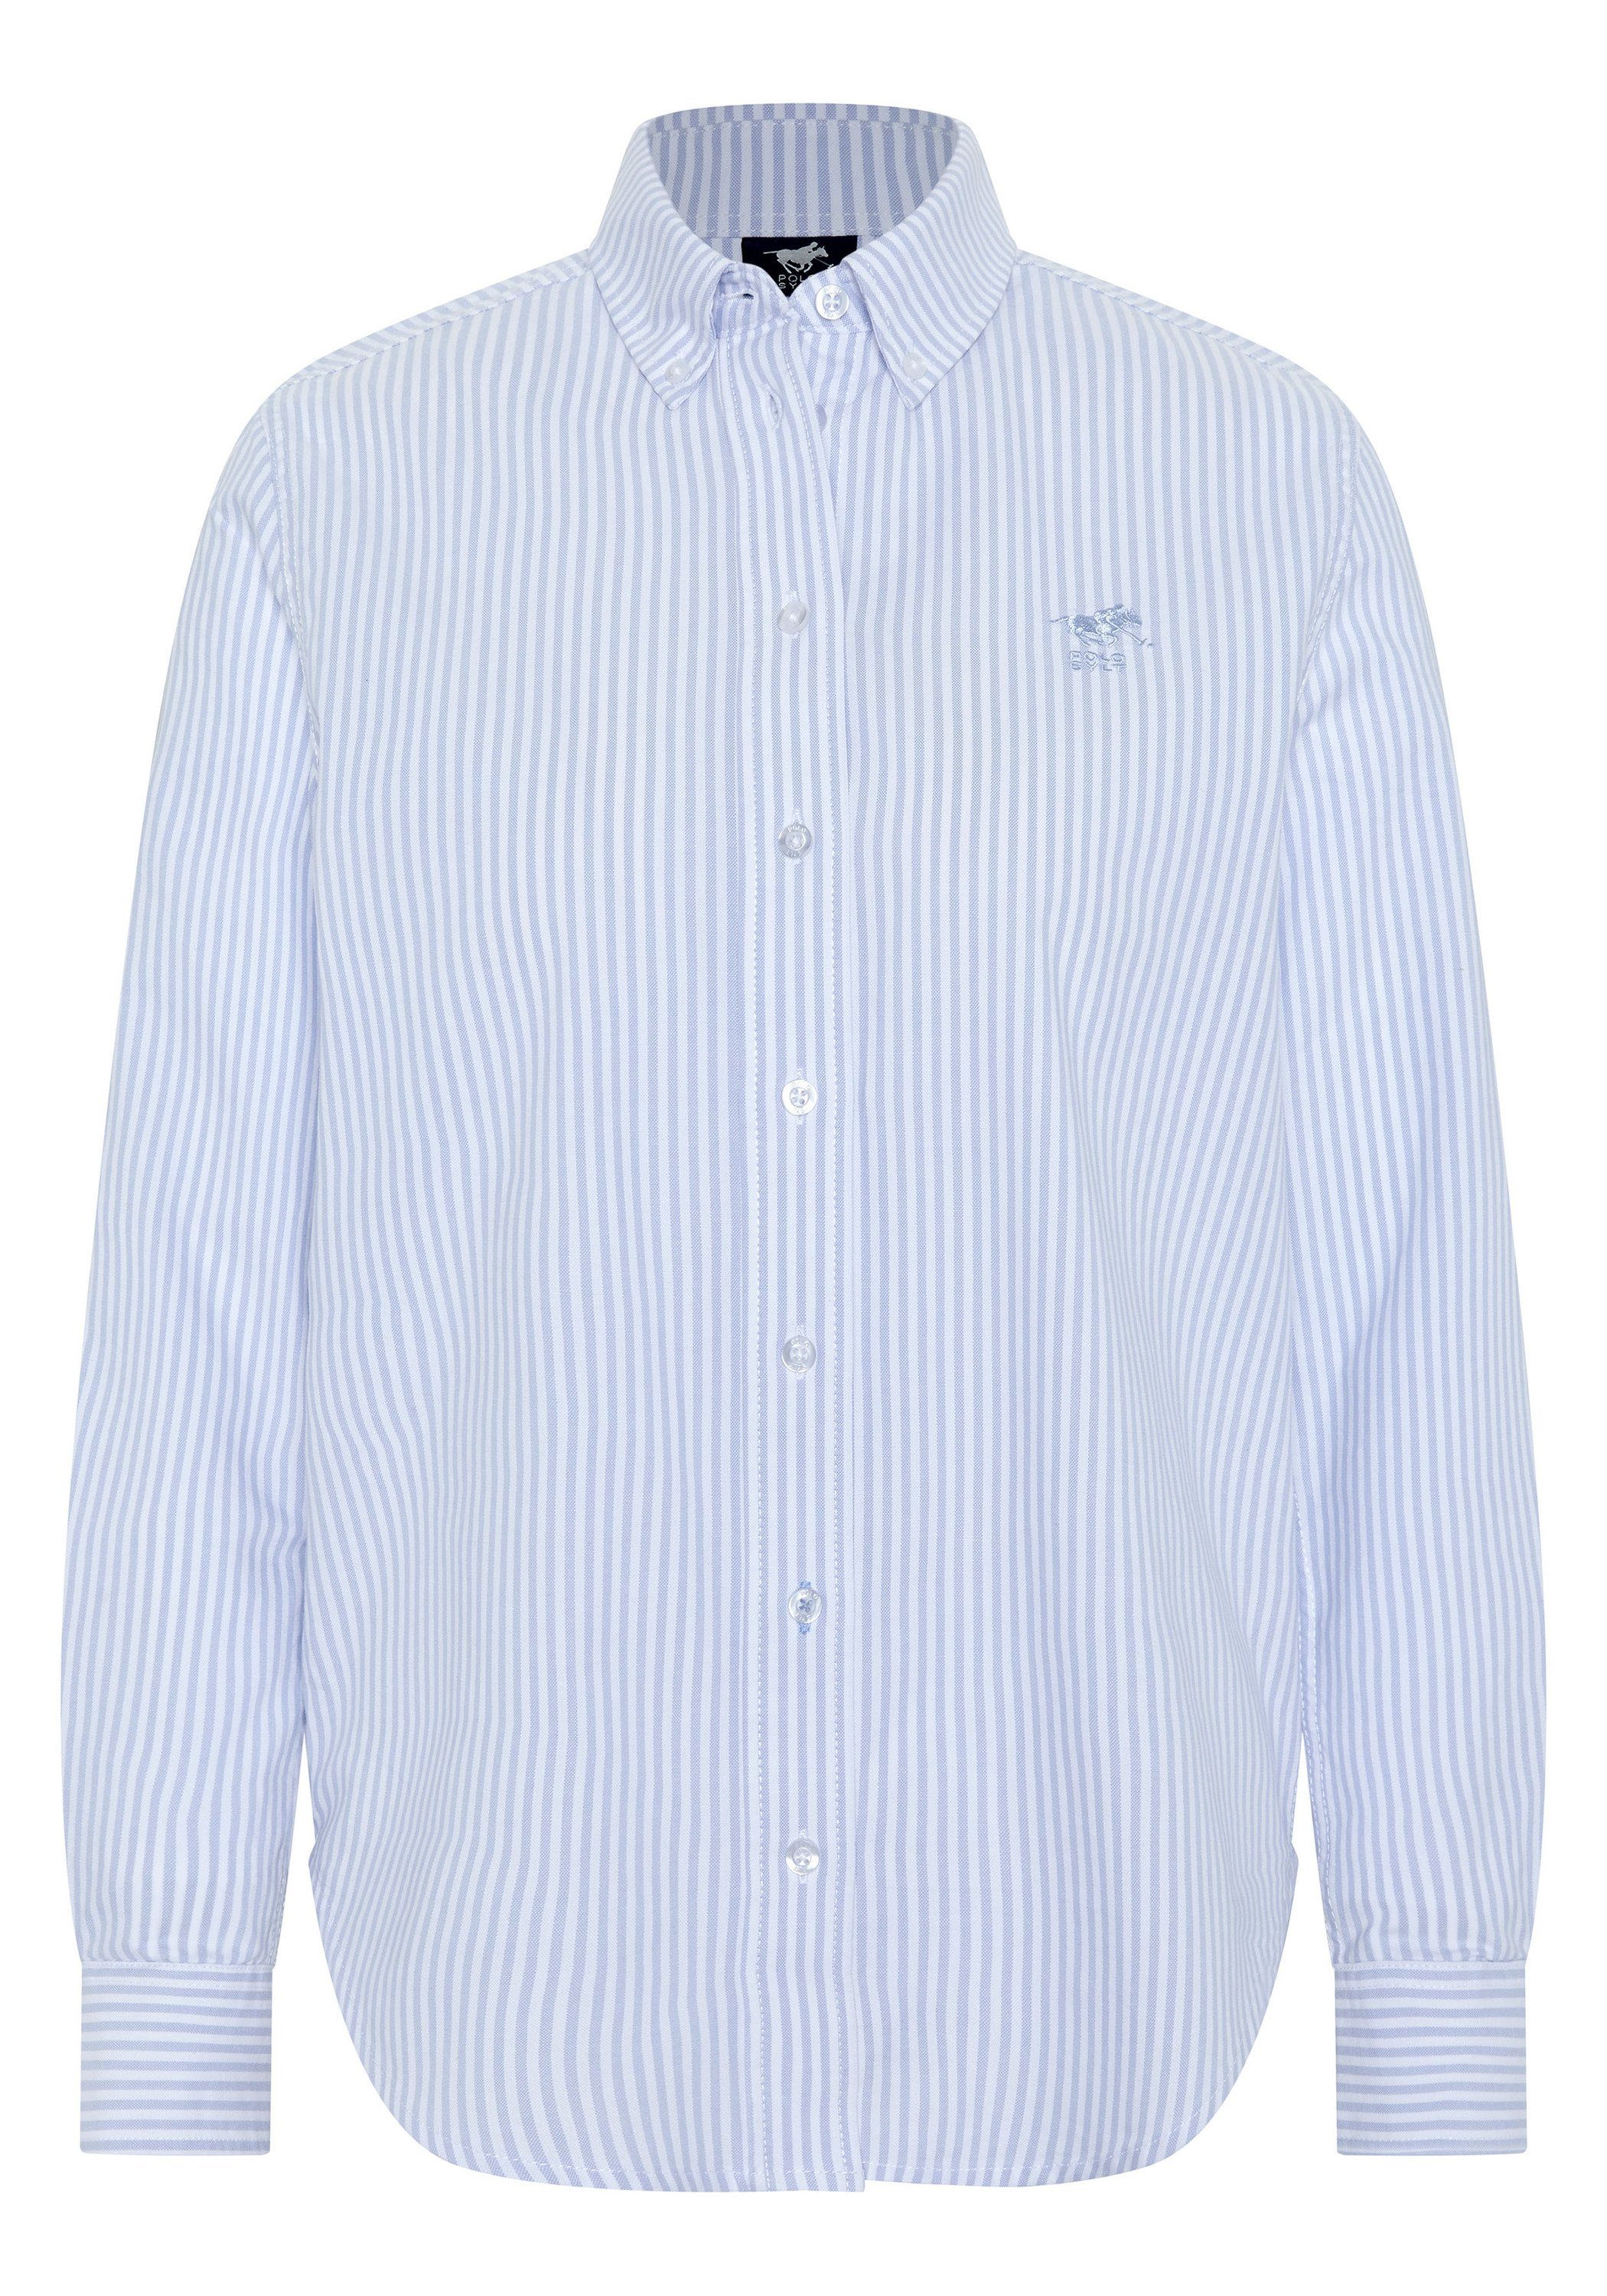 Polo Sylt Hemdbluse mit Streifenmuster 4010 Light Blue/White